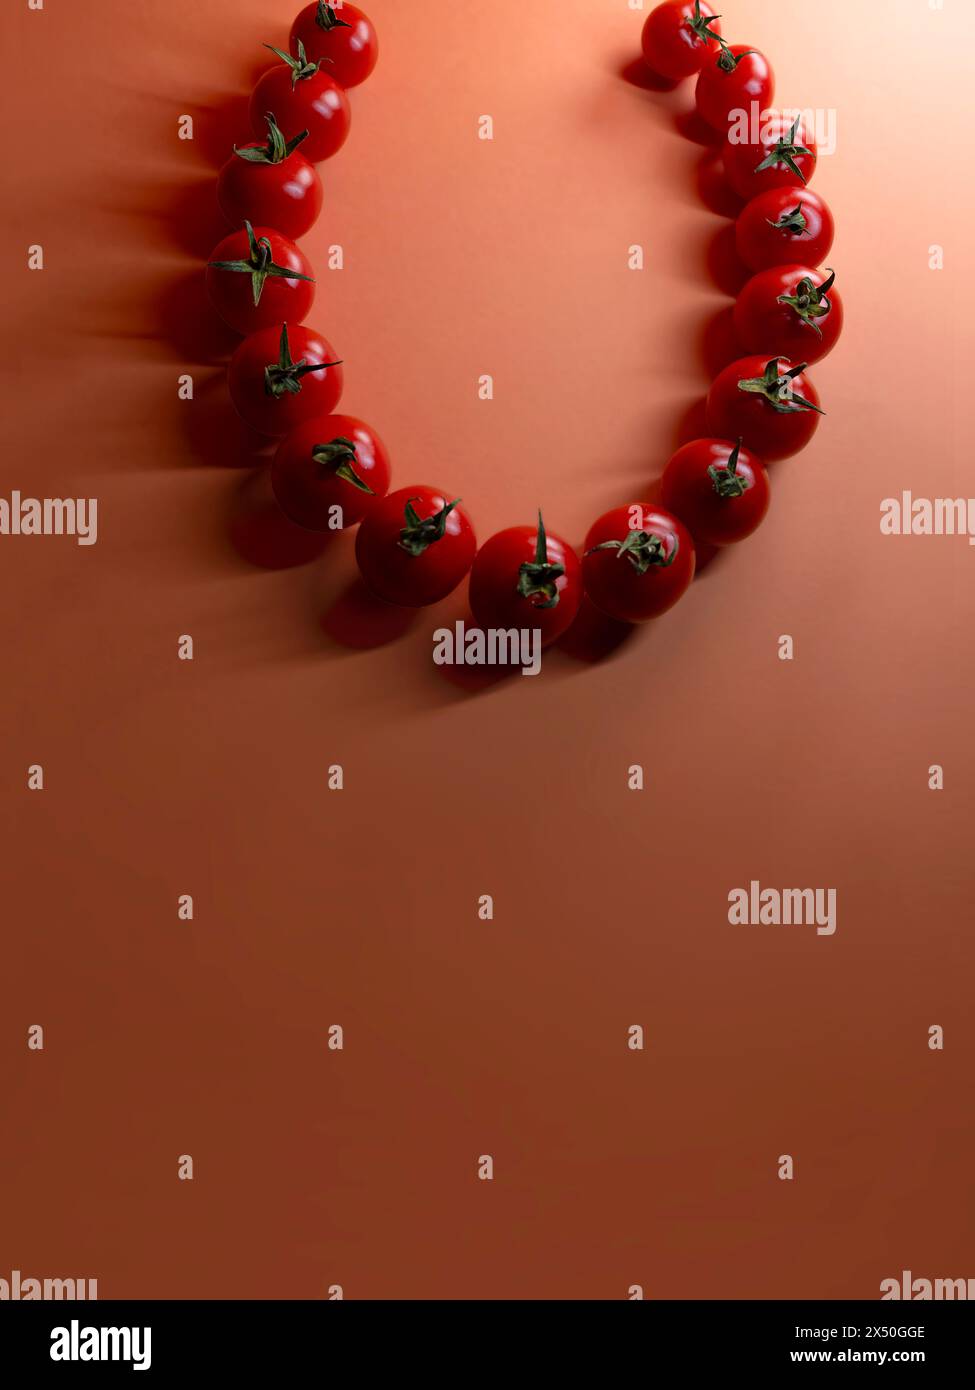 Gros plan d'un collier conceptuel fabriqué à partir de tomates Banque D'Images